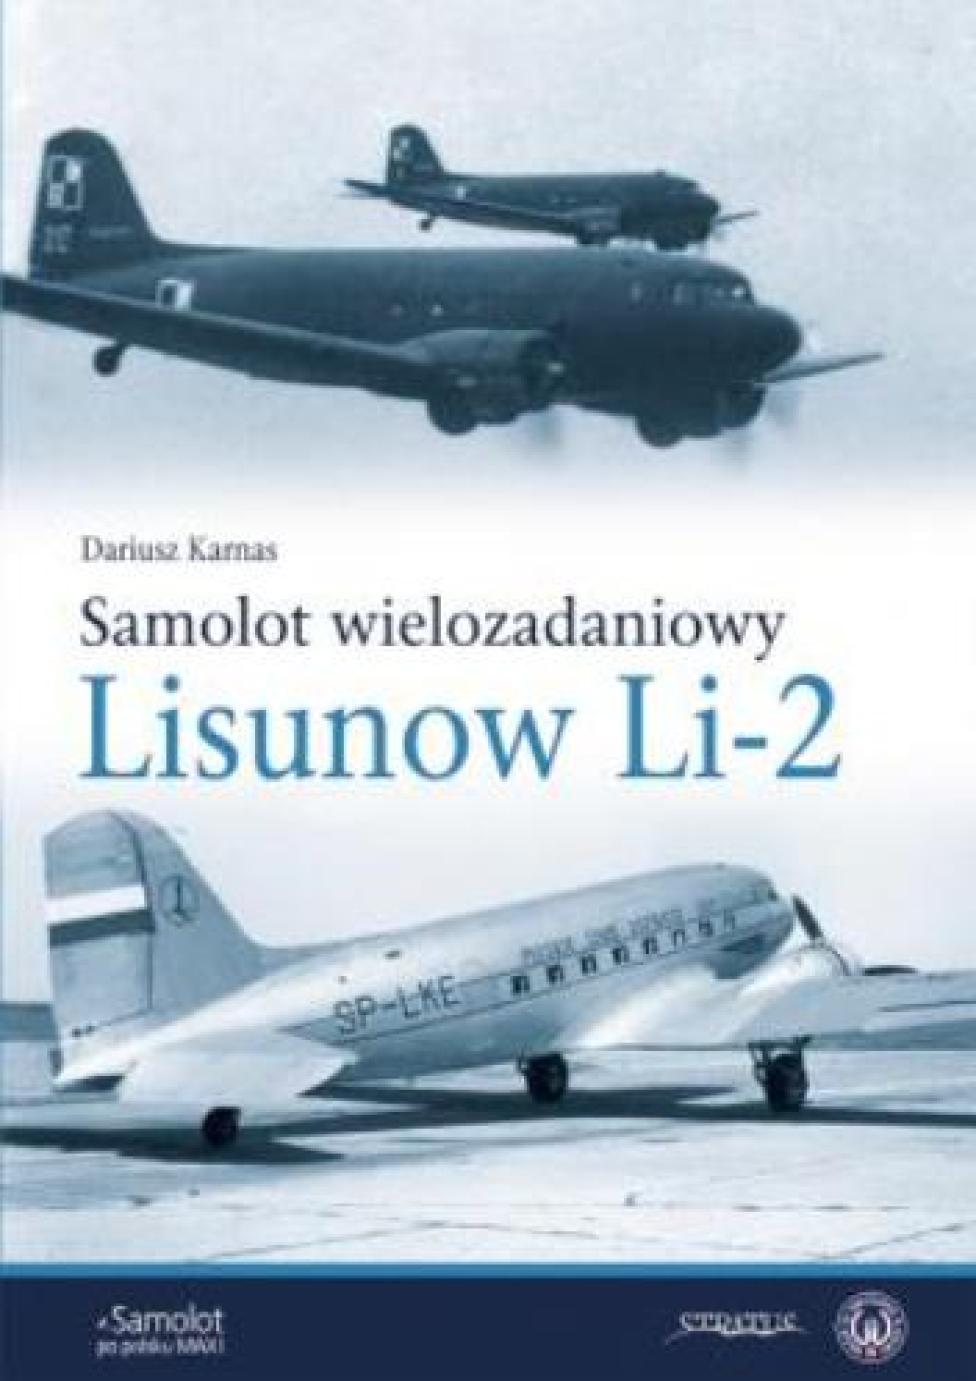 Książka "Samolot wielozadaniowy Lisunow Li-2" (fot. Wydawnictwo Stratus)